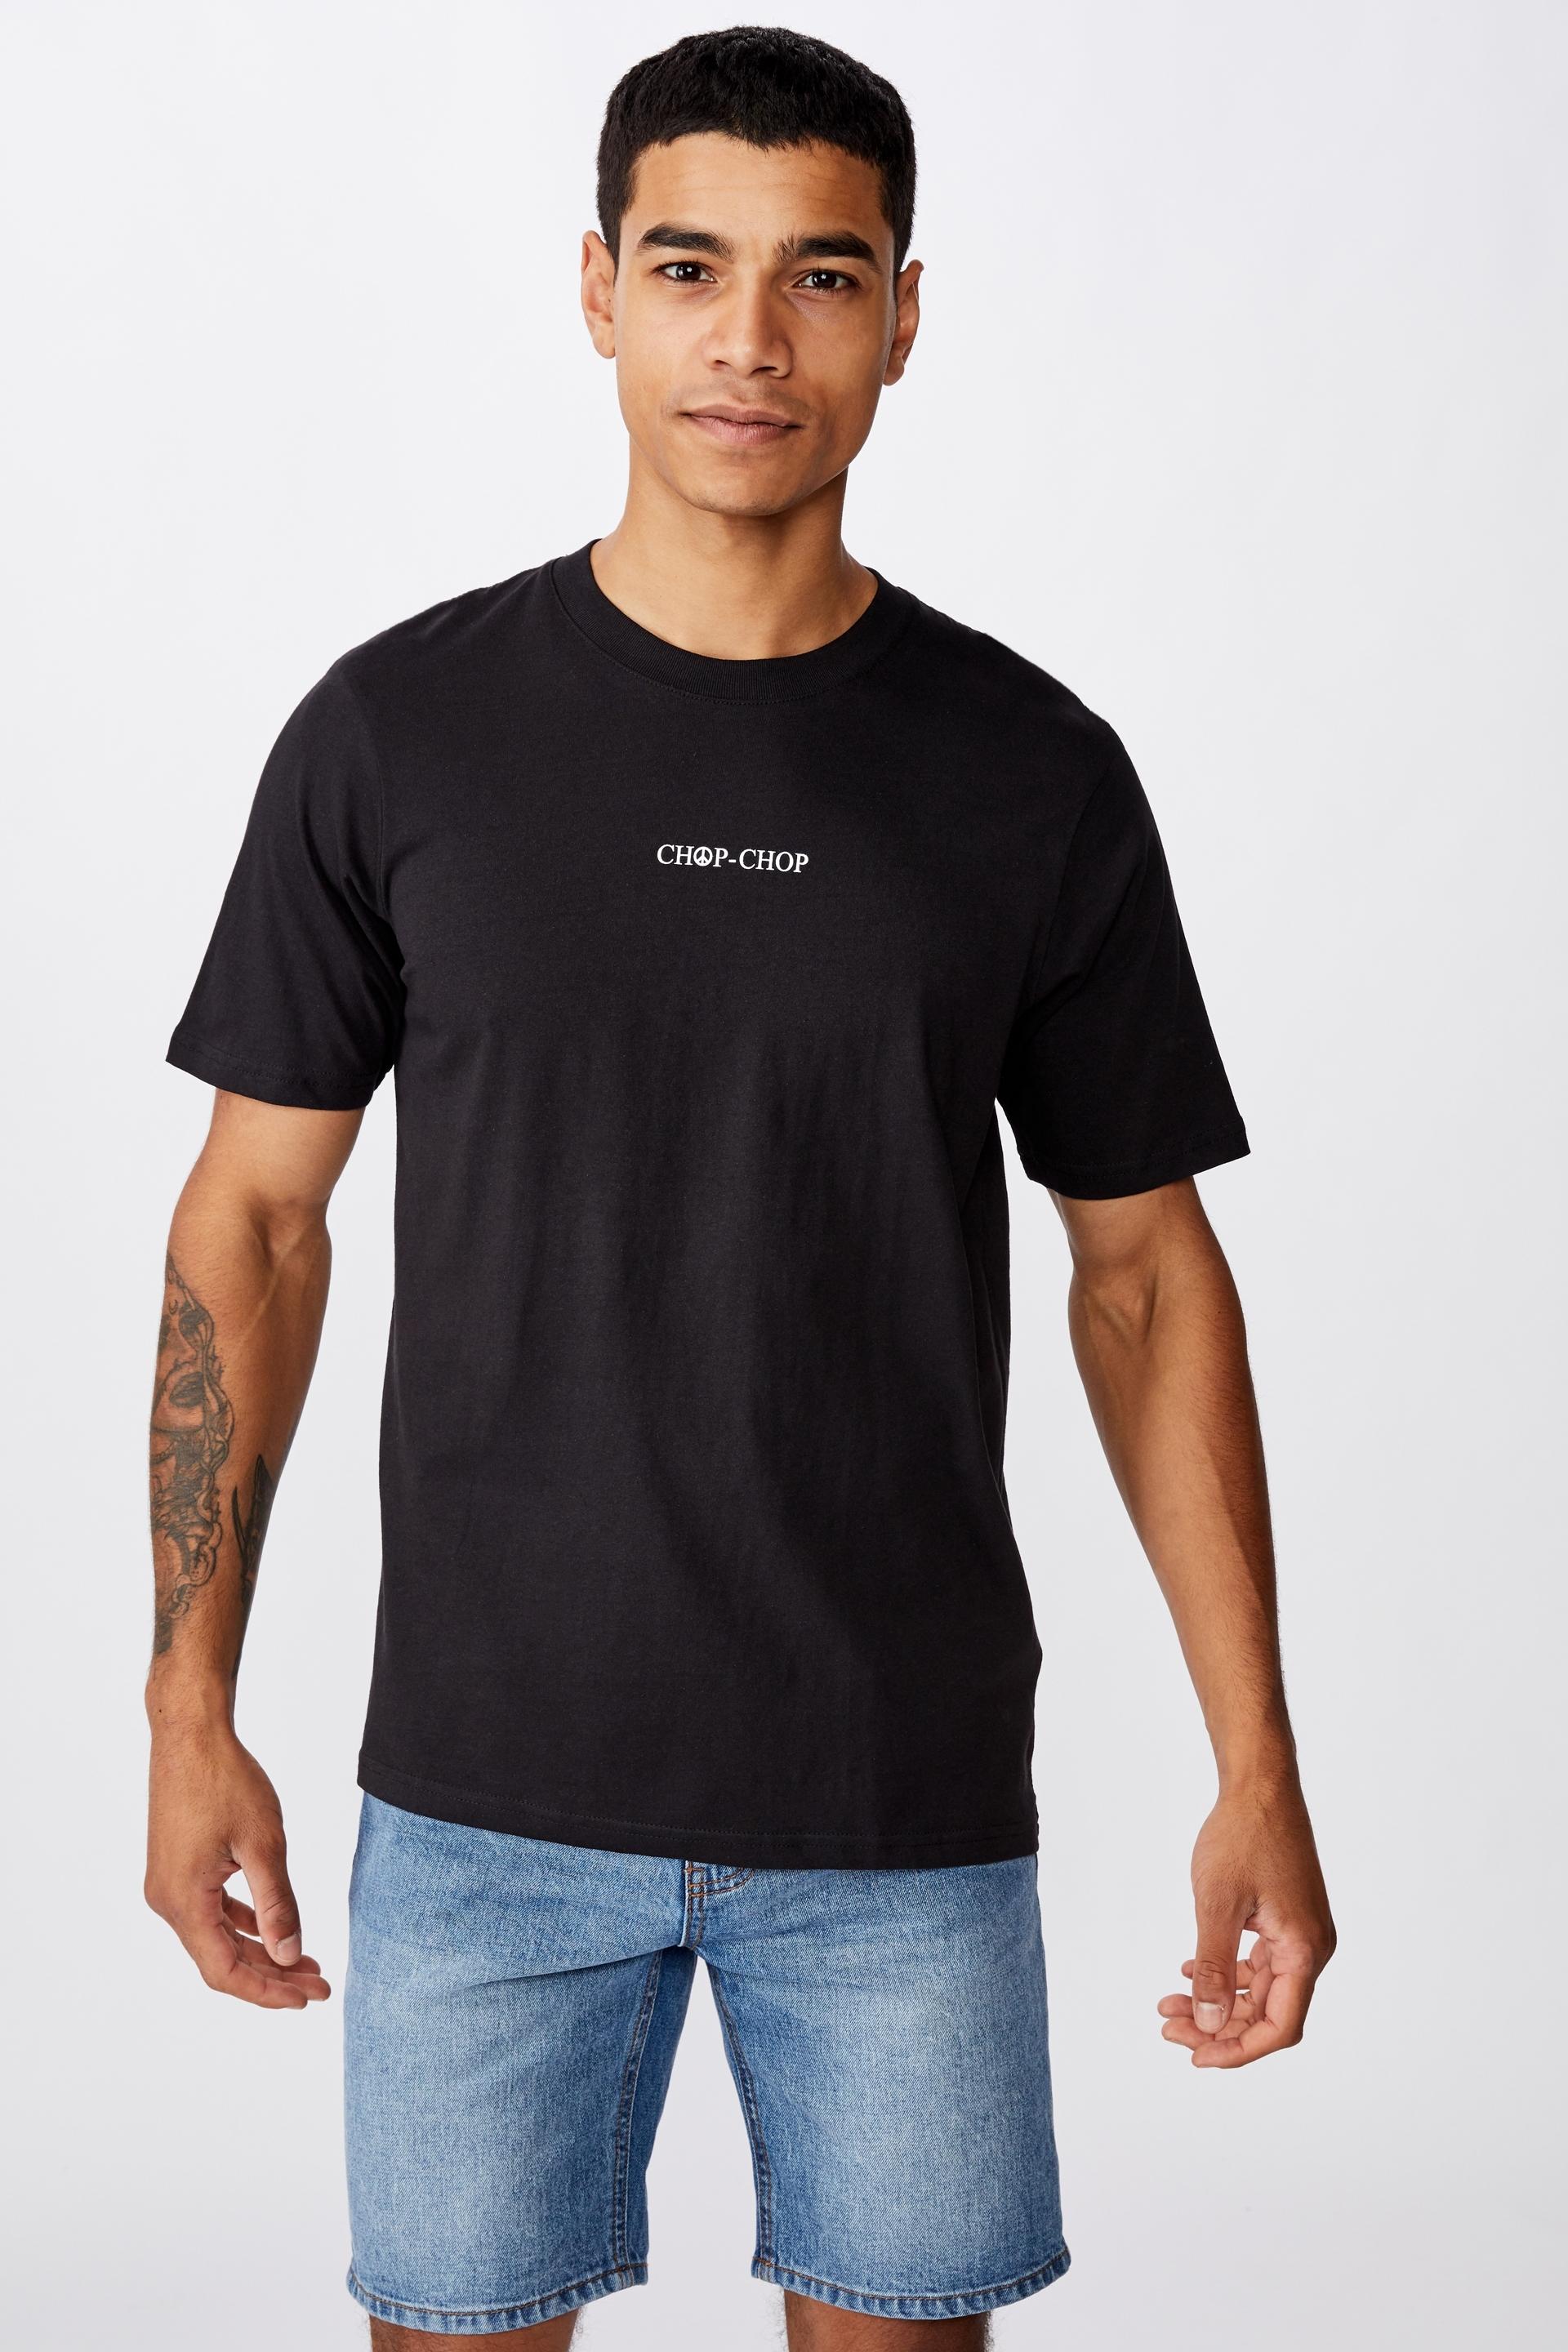 Chop chop t-bar souvenir T-shirt - black Cotton On T-Shirts & Vests ...